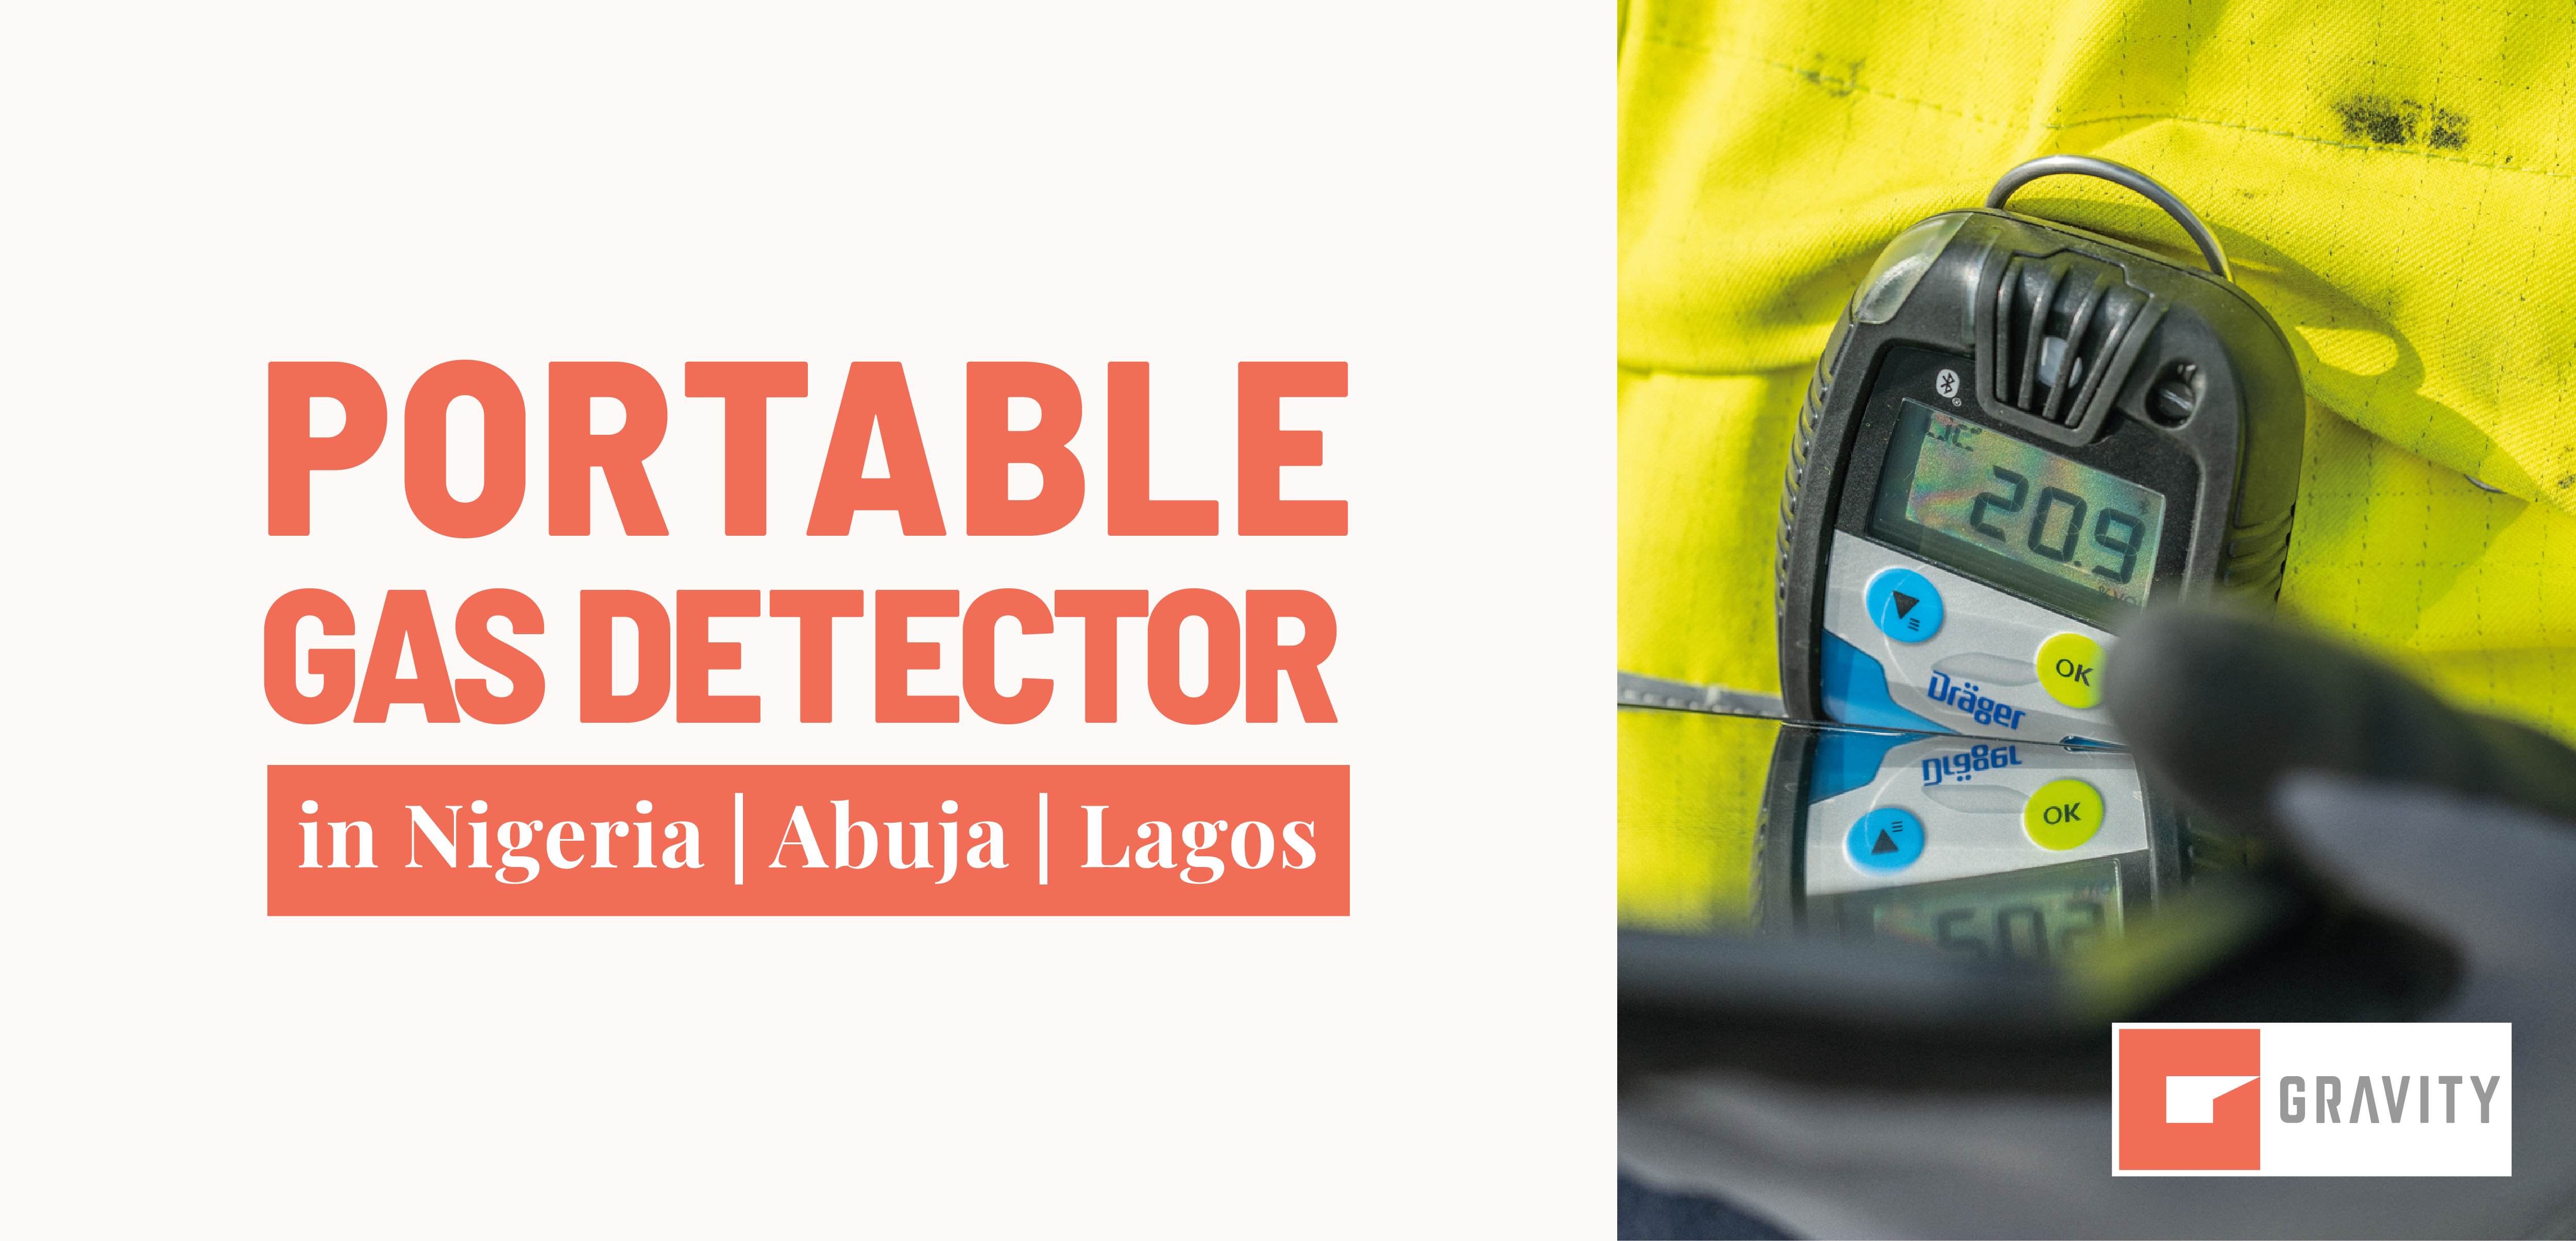 Portable gas detector in Nigeria